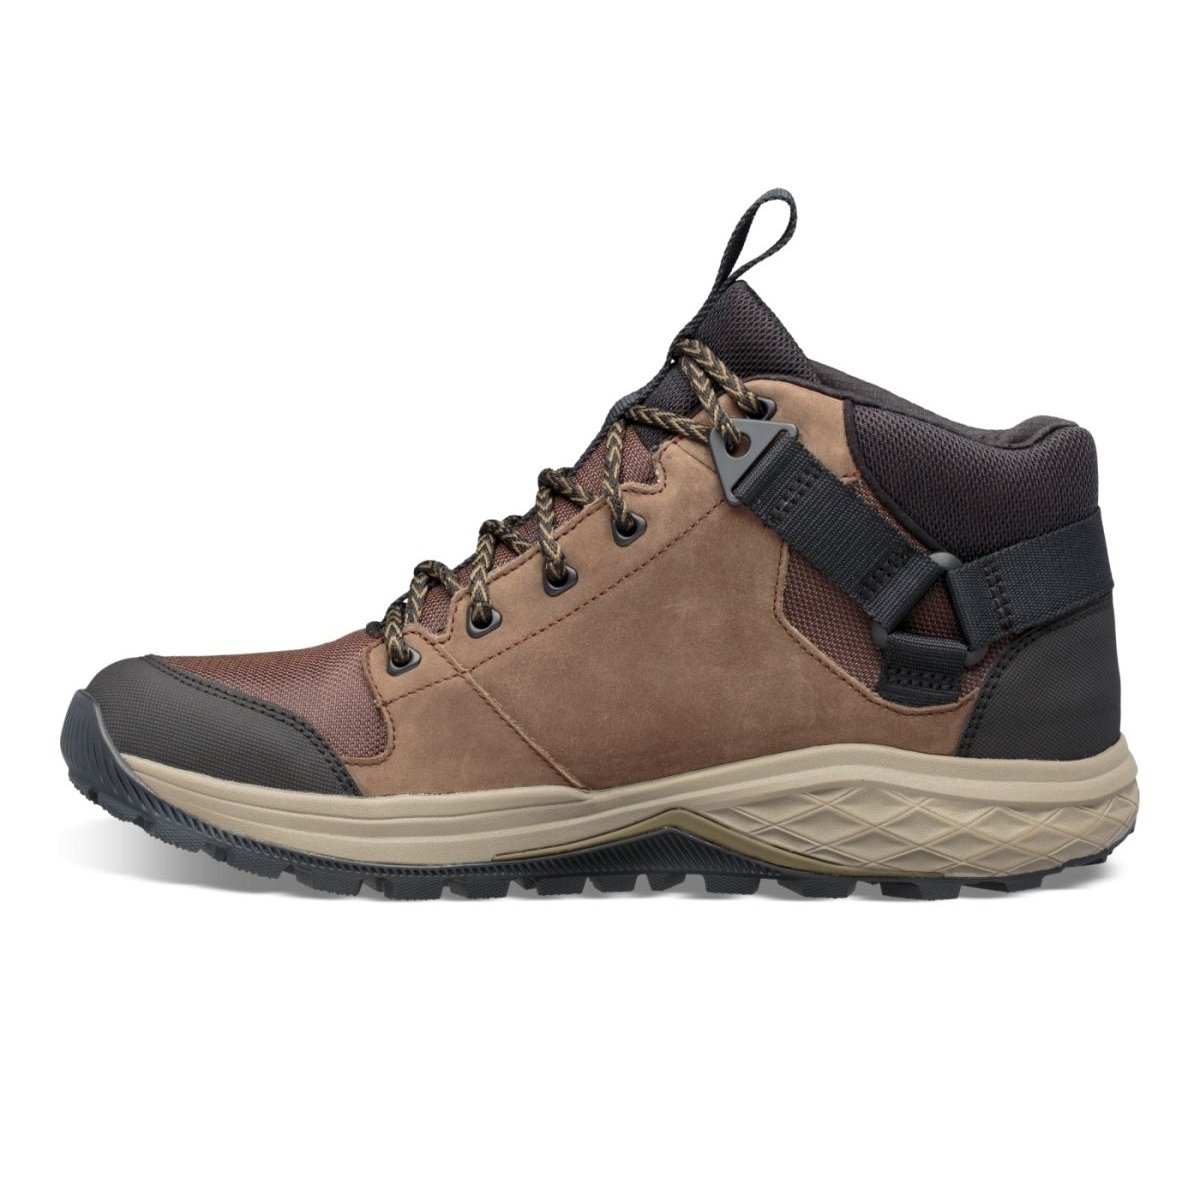 Teva Men's Grandview Mid Gore-Tex Hiking Shoe Chocolate Chip - 1106804-CCHP CHOCOLATE CHIP - CHOCOLATE CHIP, 10.5